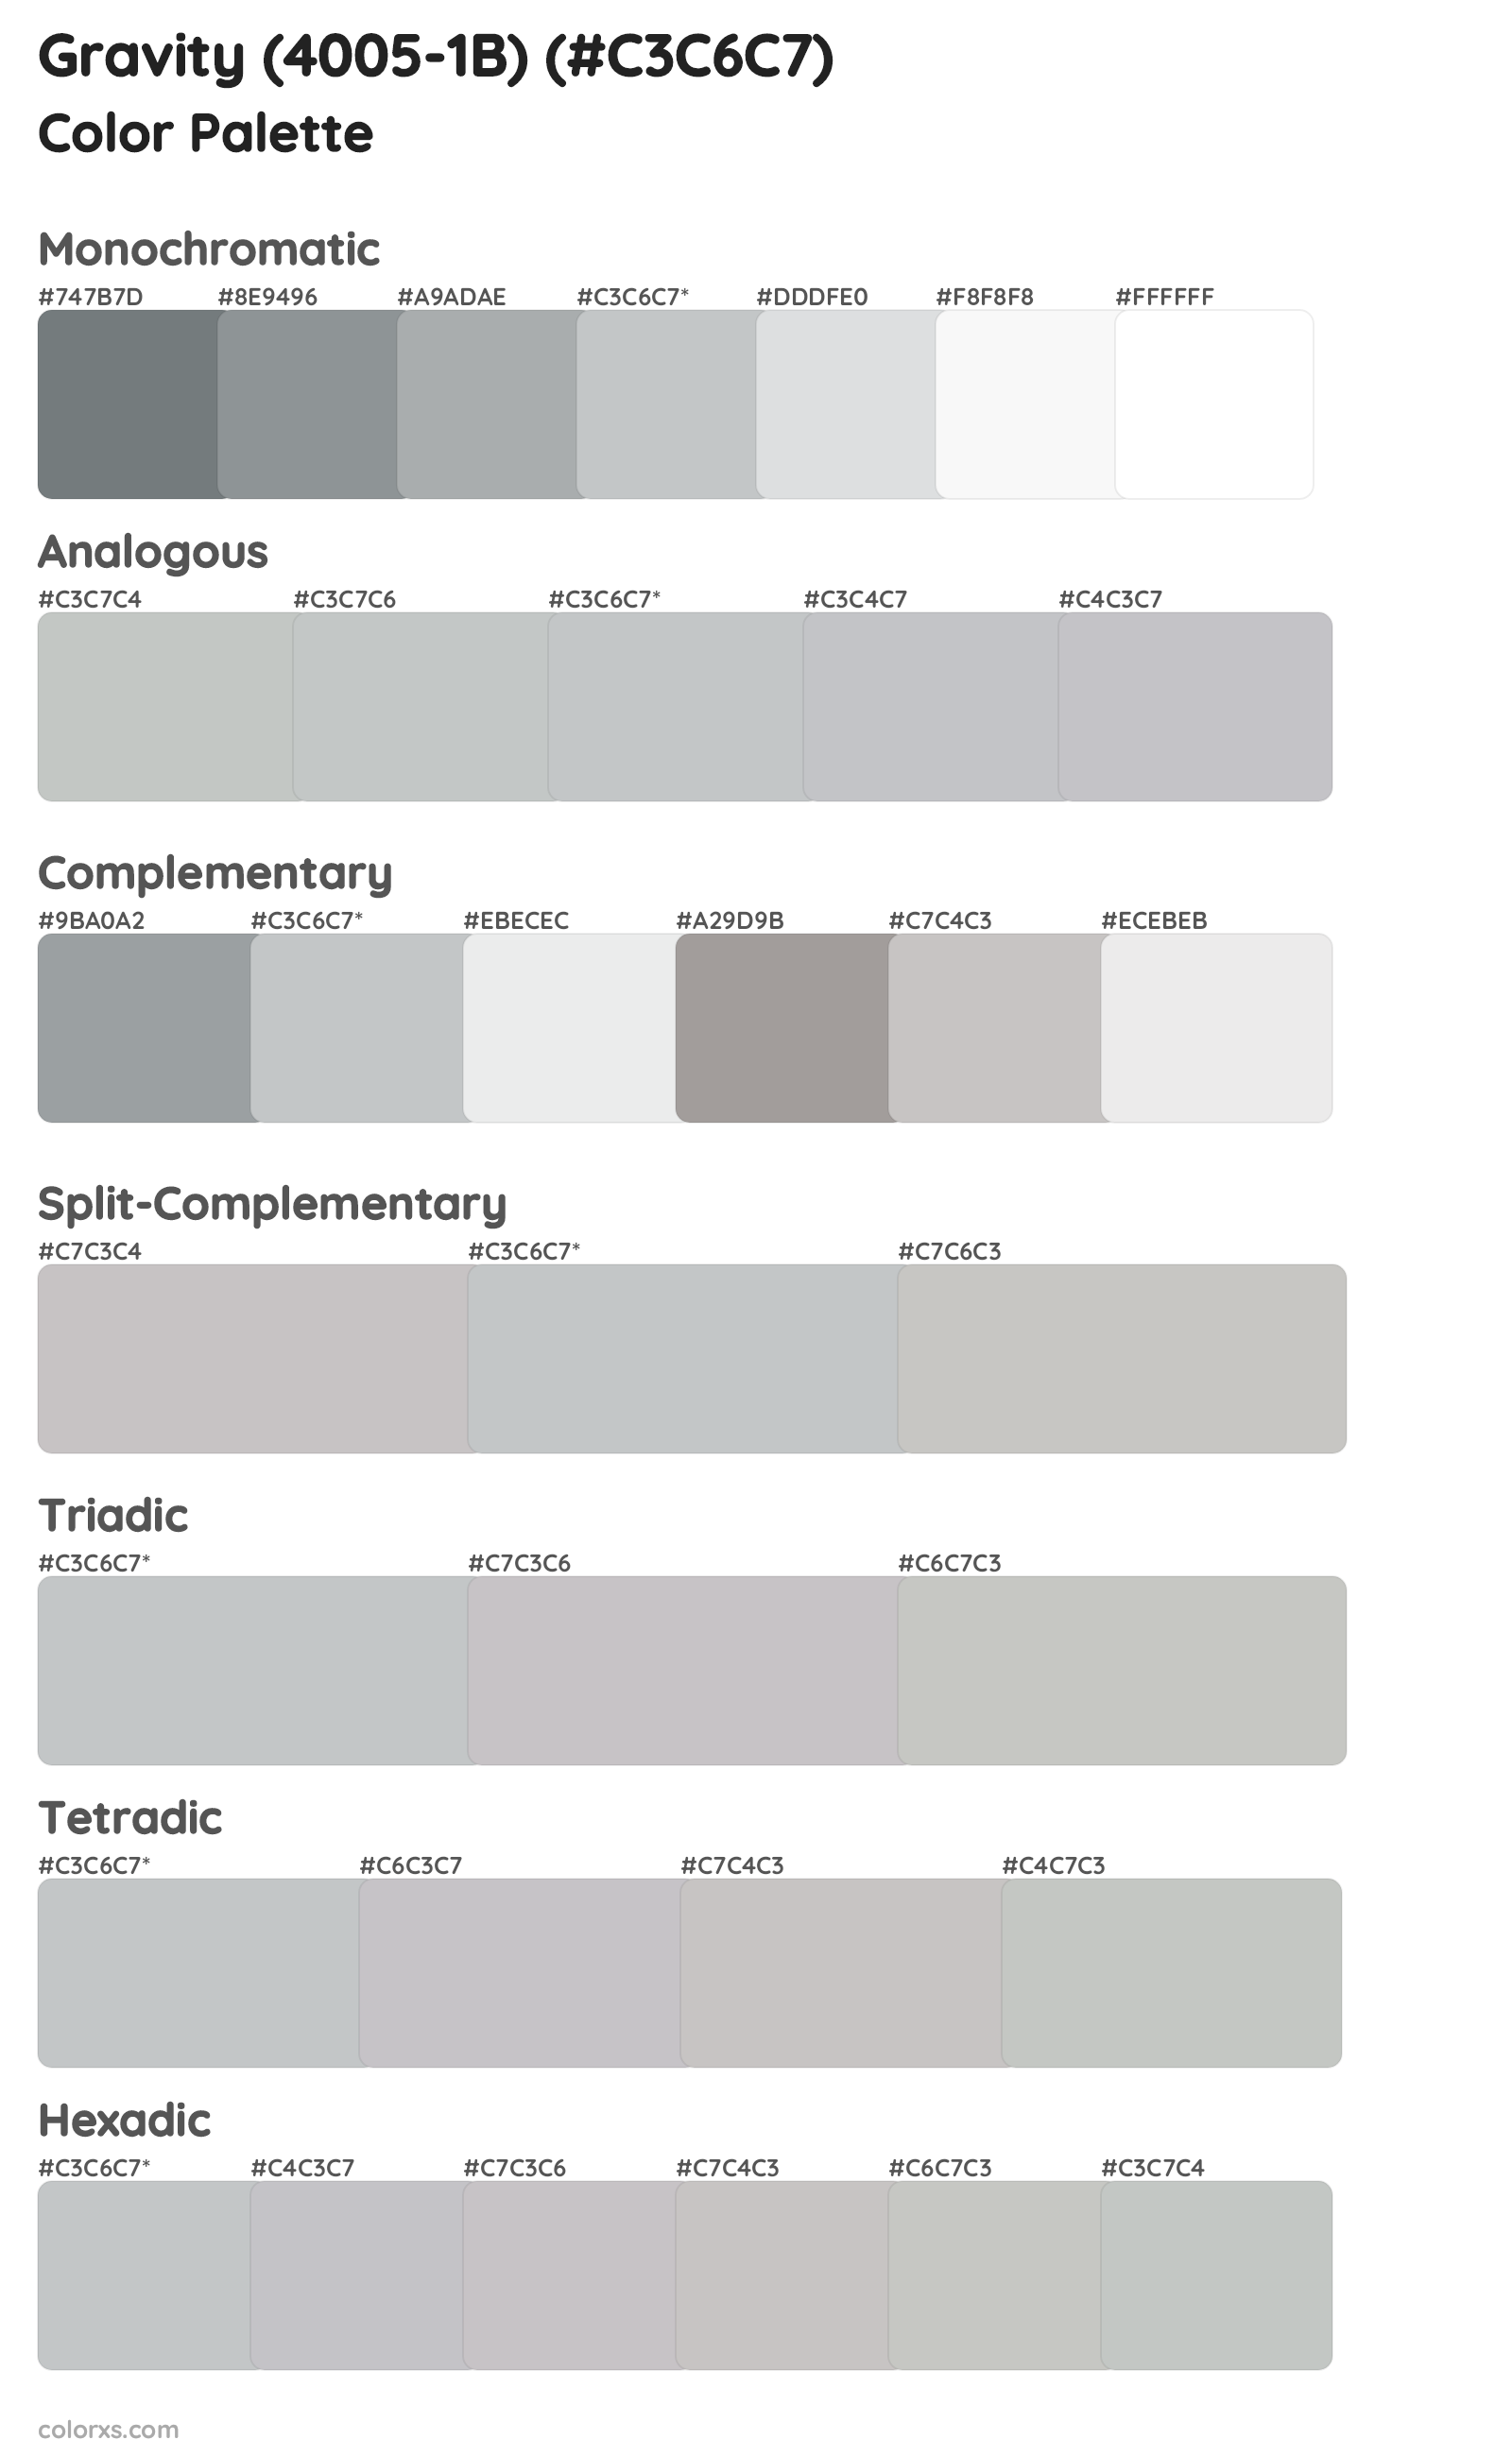 Gravity (4005-1B) Color Scheme Palettes